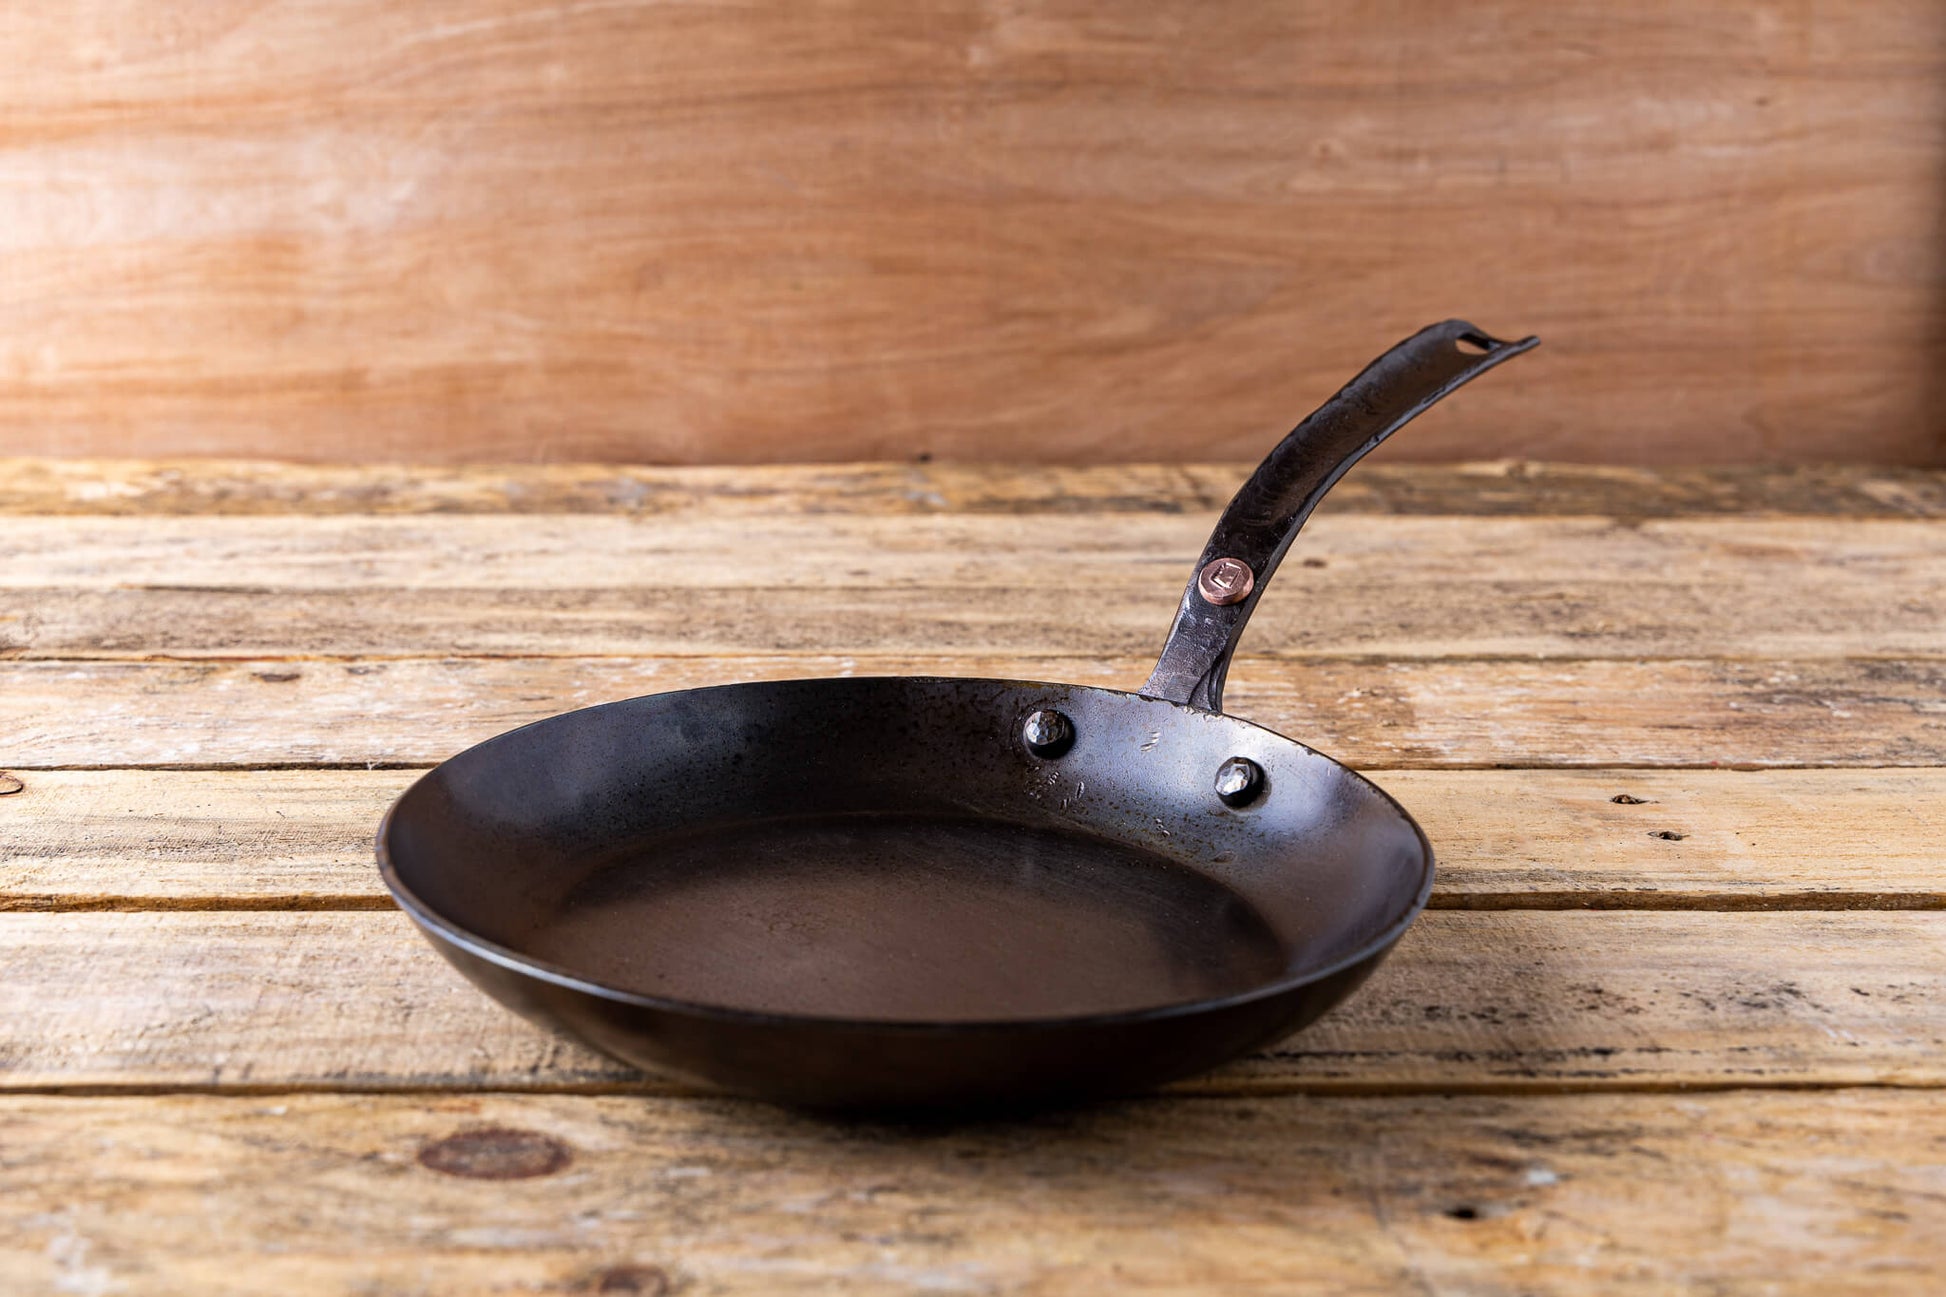 NEW: Big De Buyer Carbon Steel Pan Review & Cooking Feature 